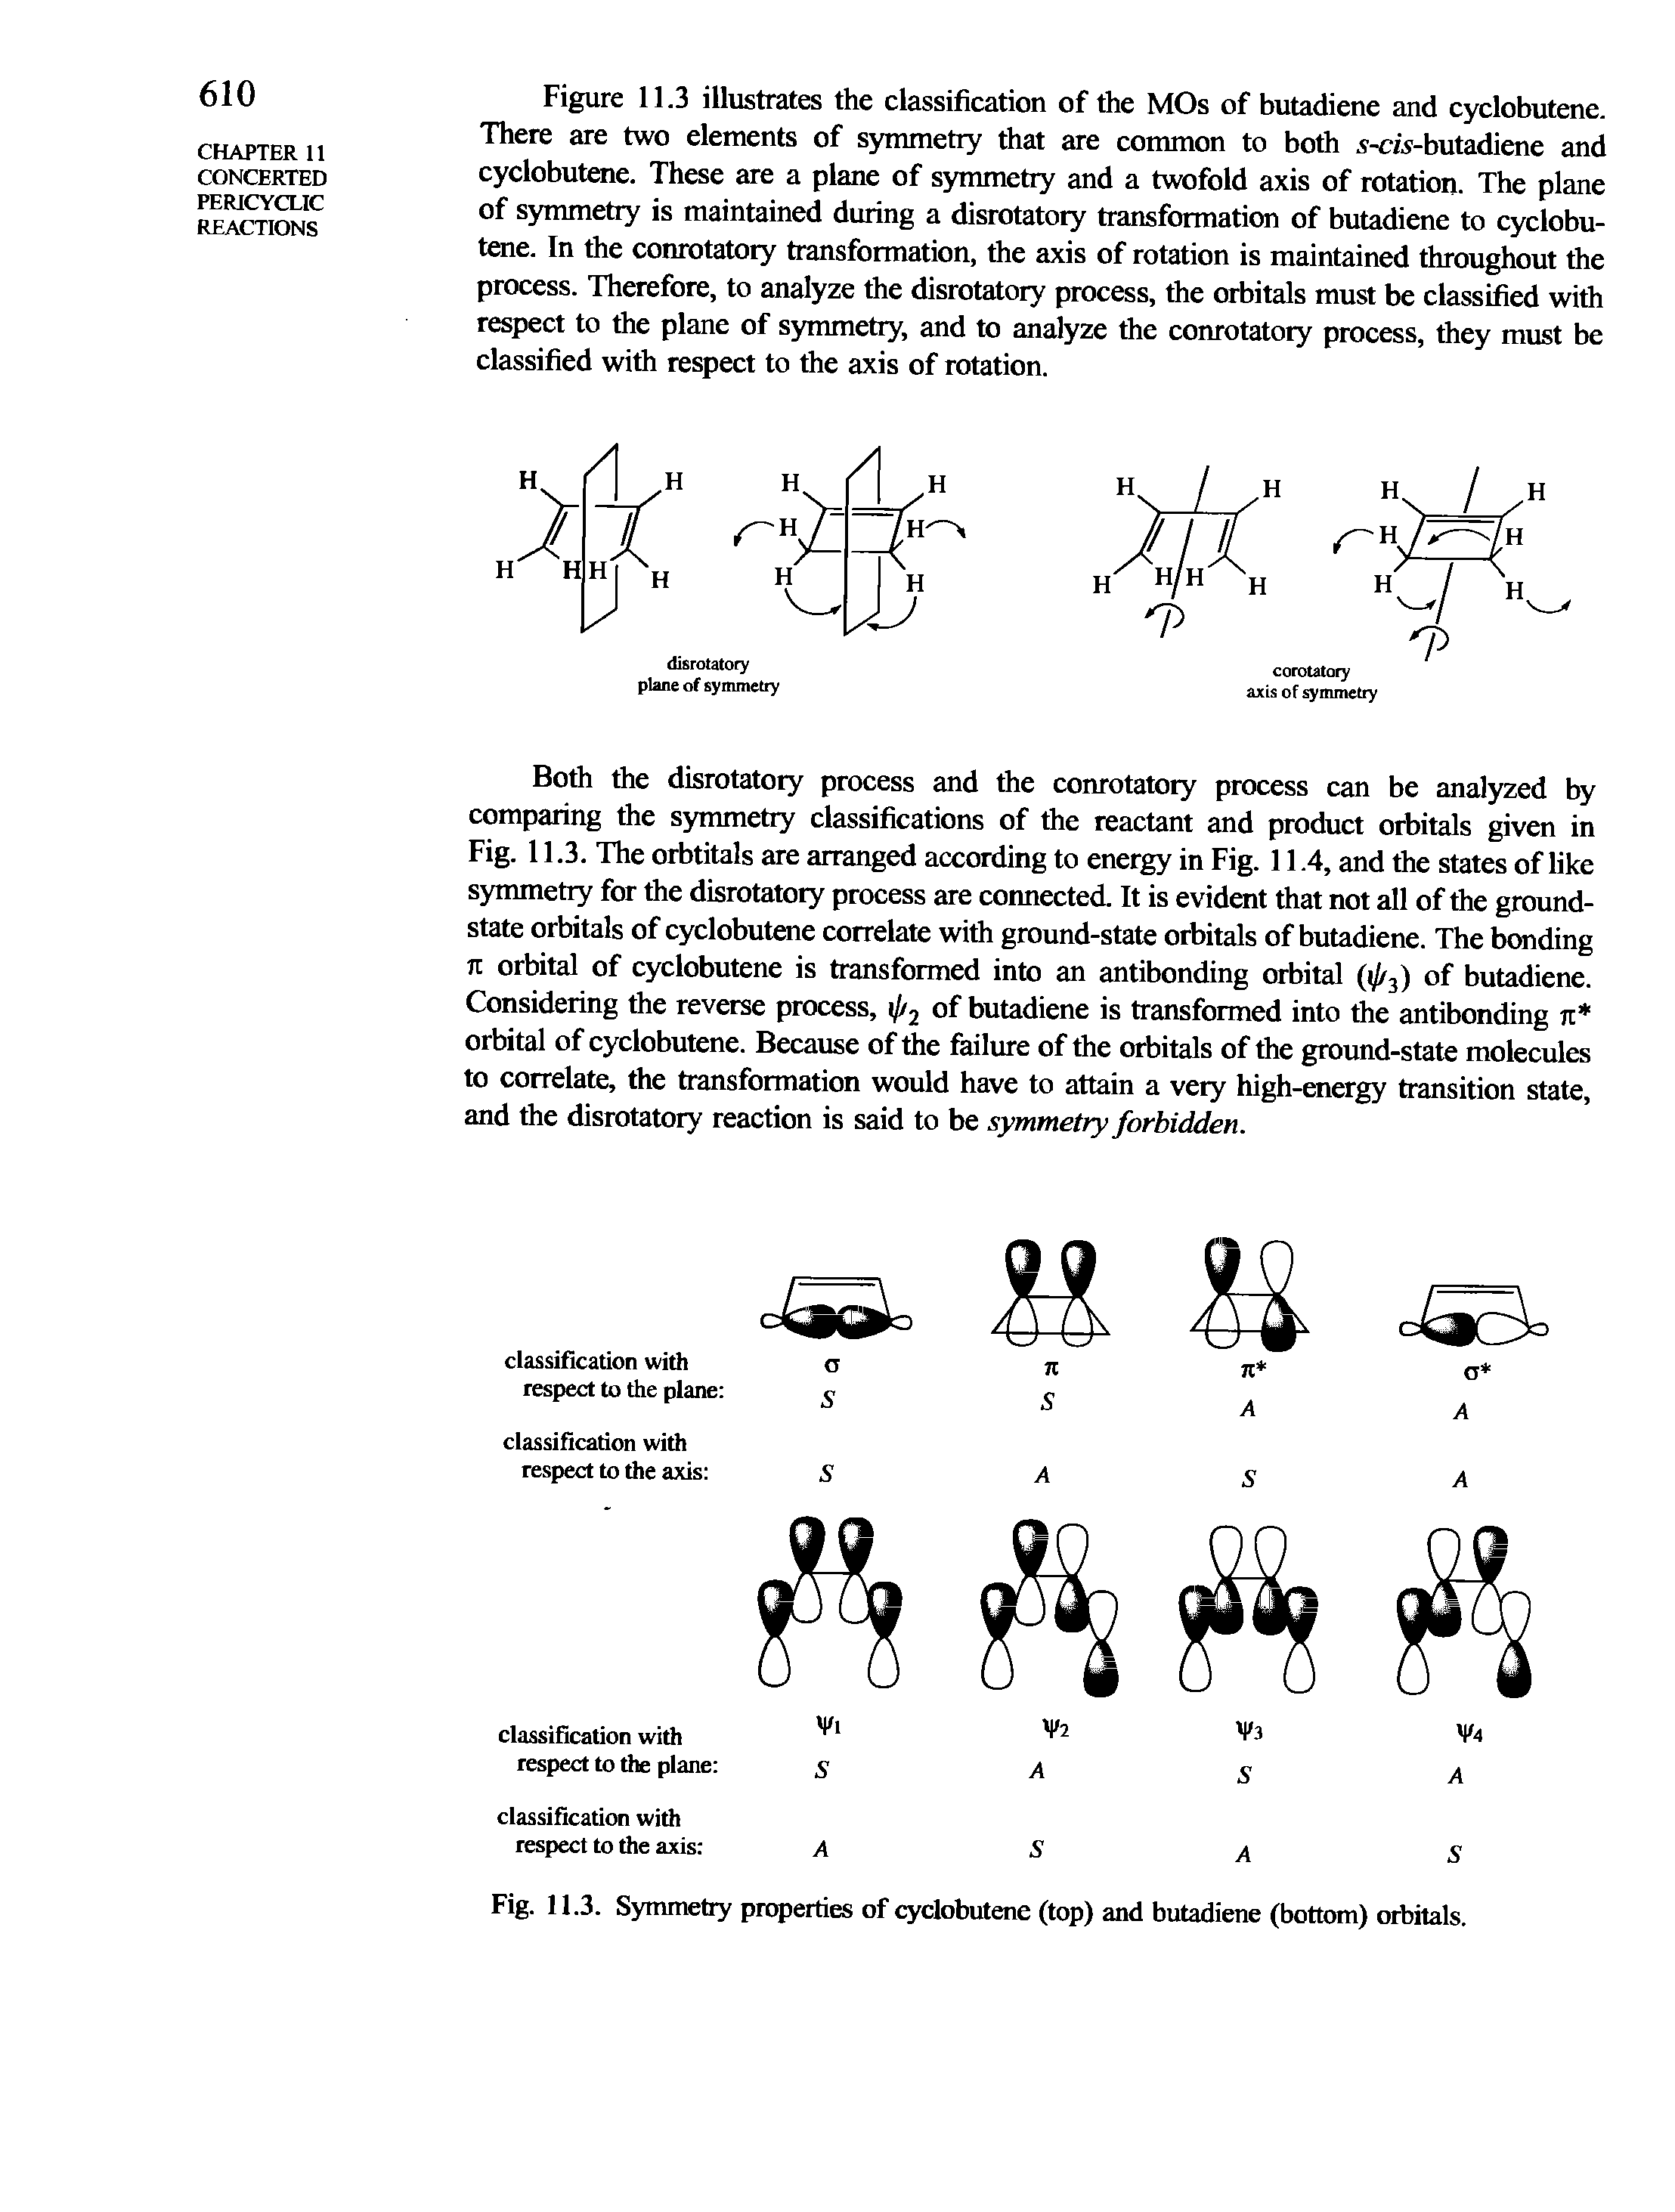 Fig. 11.3. Symmetry properties of cyclobutene (top) and butadiene (bottom) orbitals.